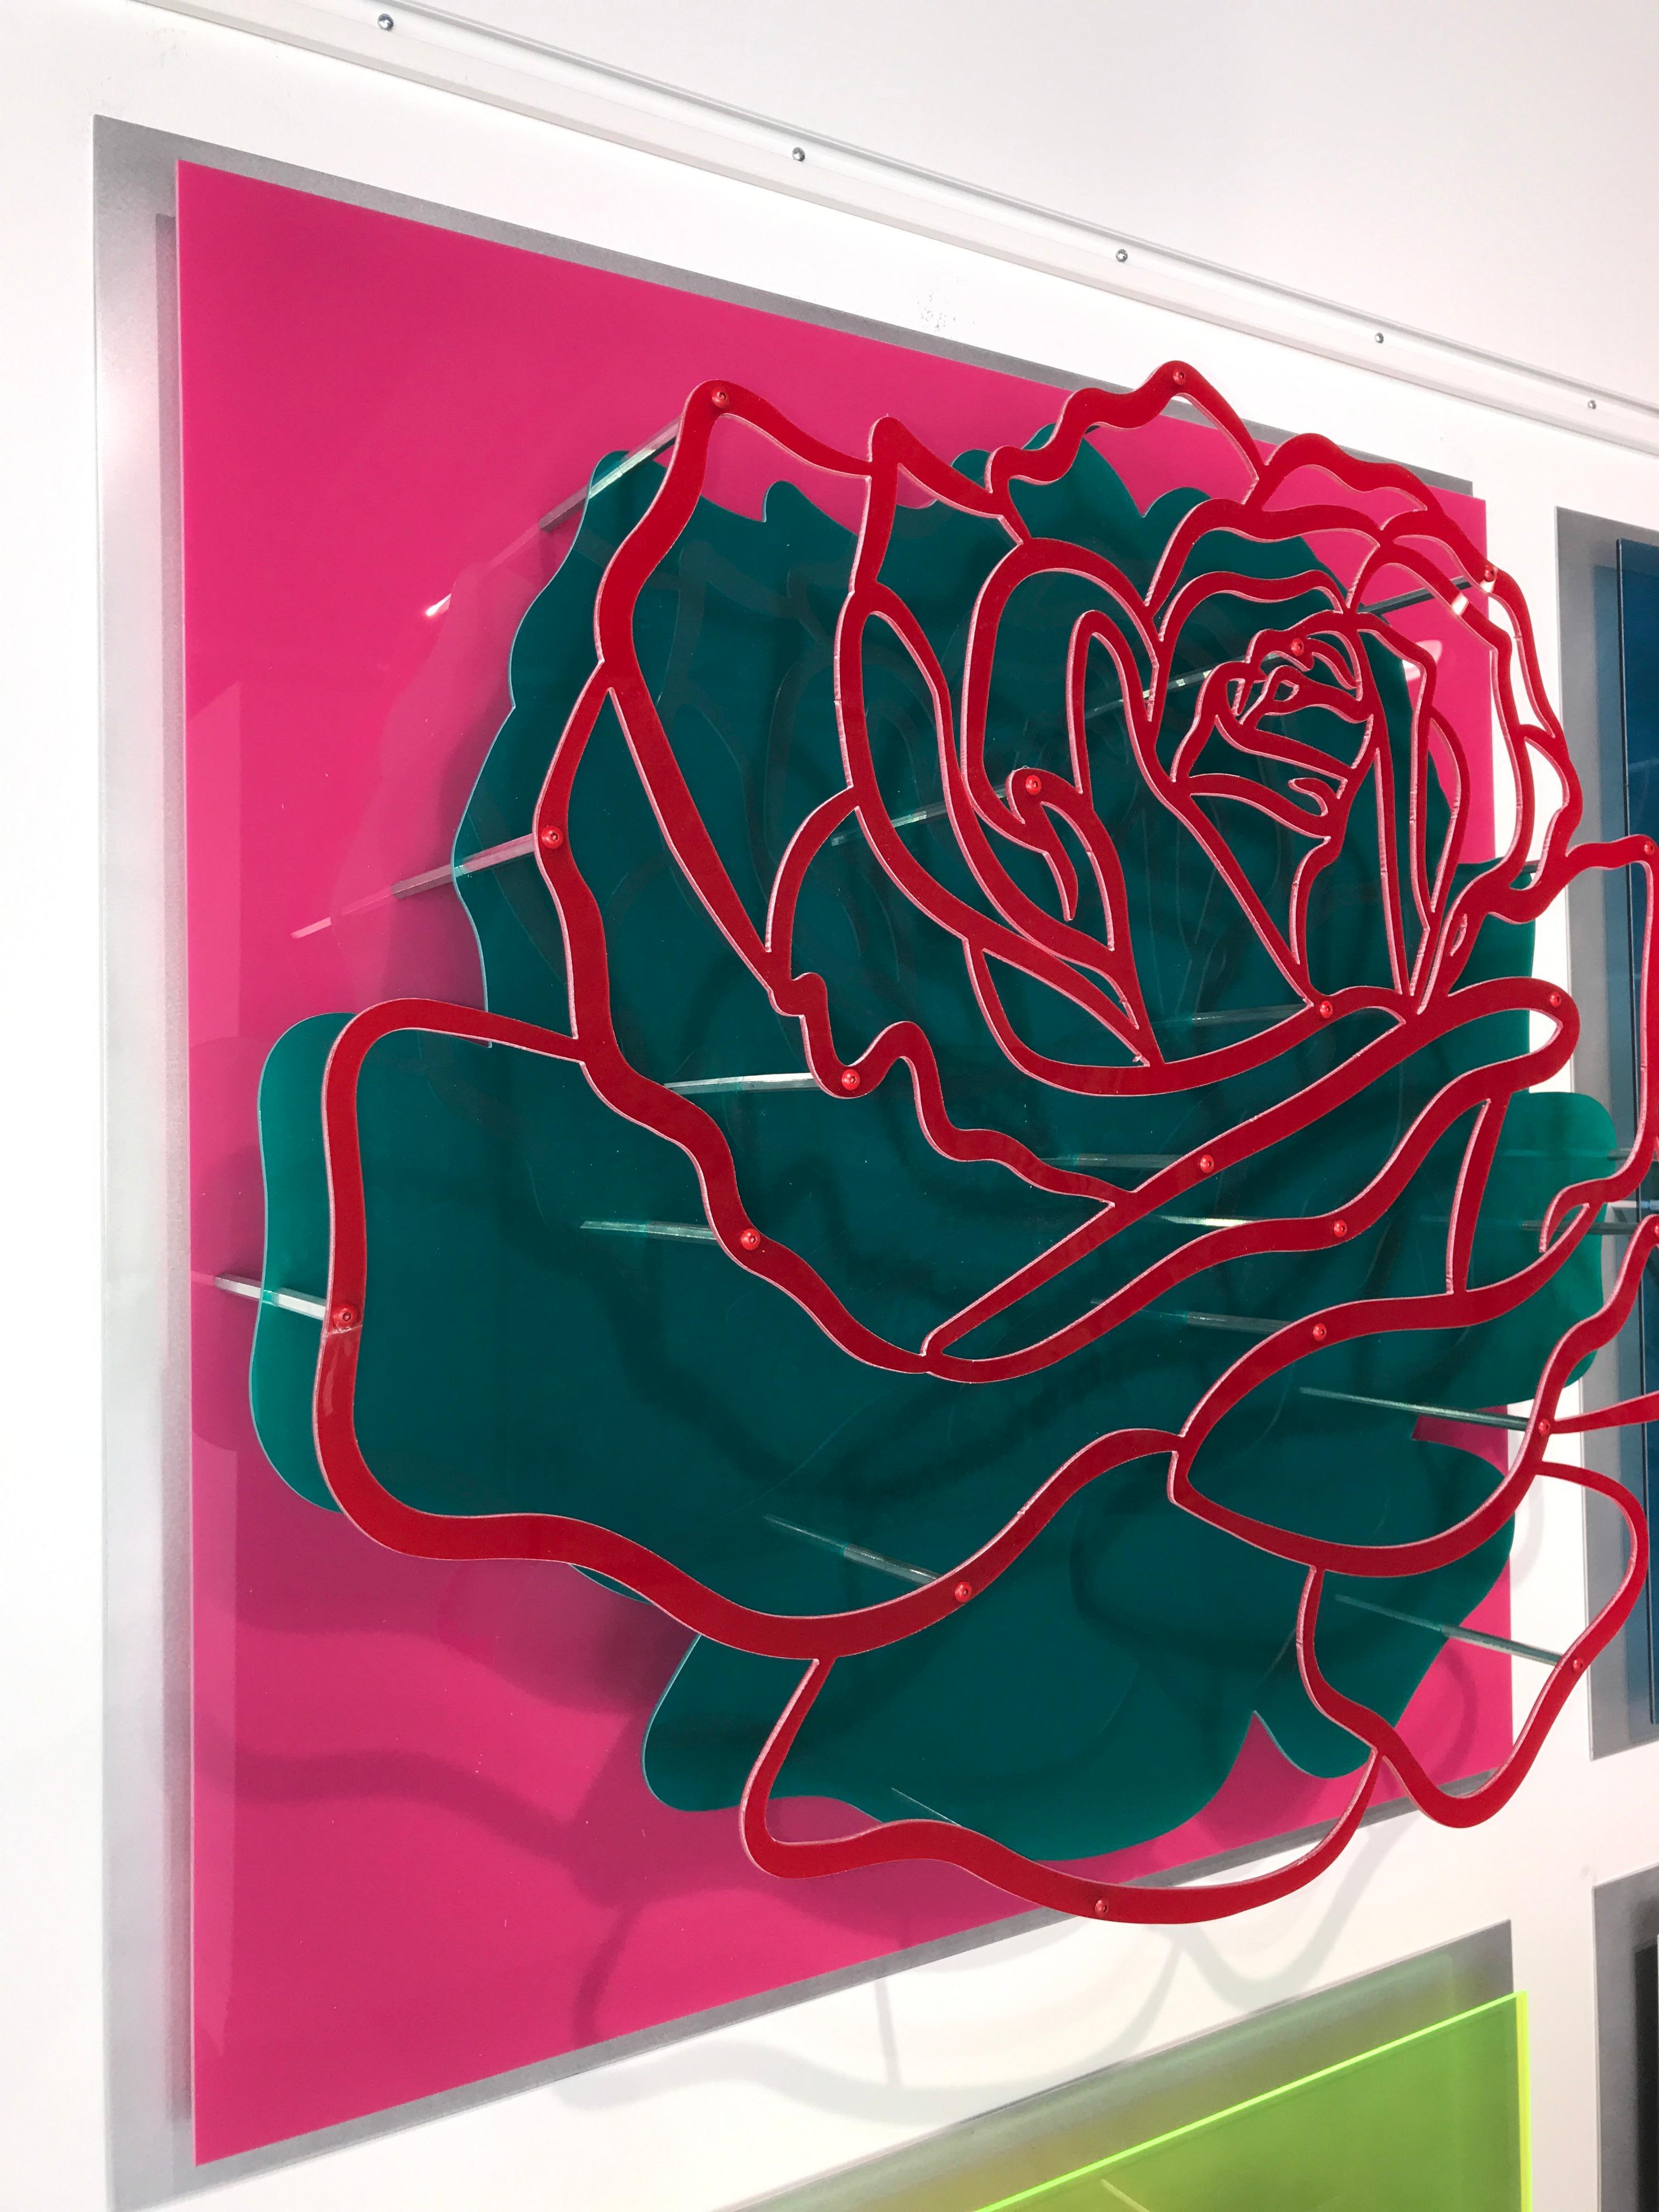 Sechs Rosen – Wandskulptur  2